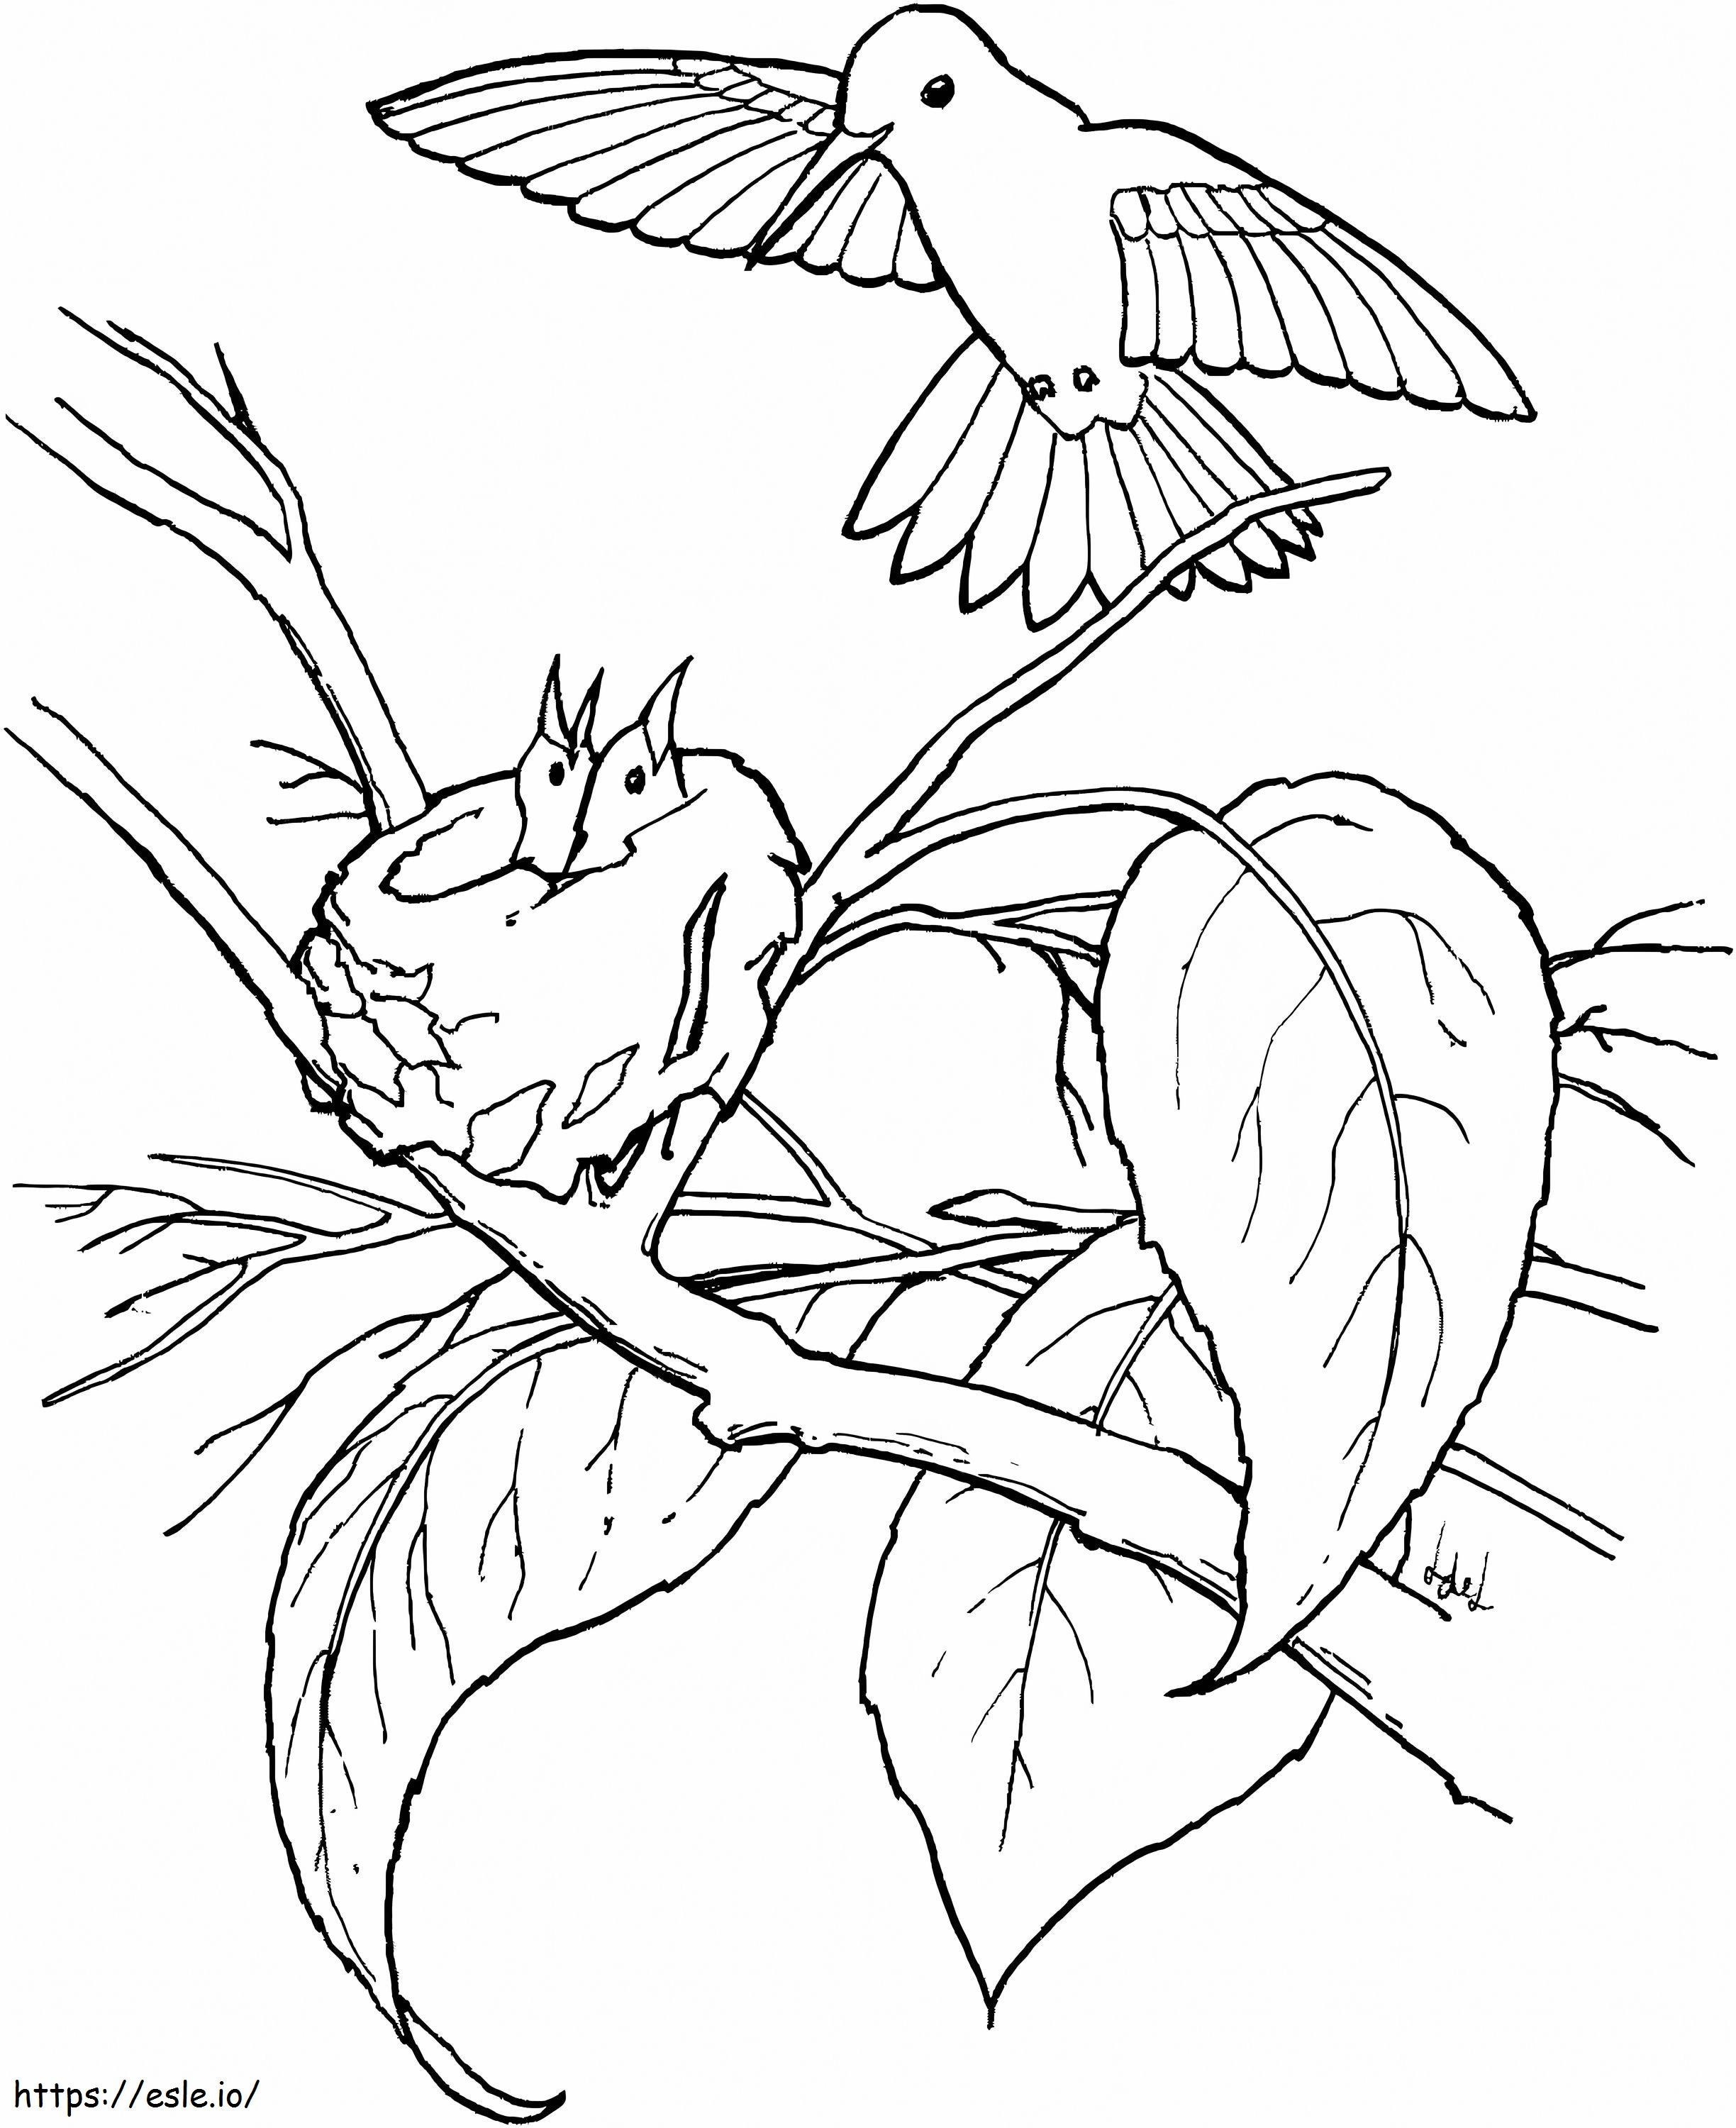 Kolibri-Familie im Baum ausmalbilder